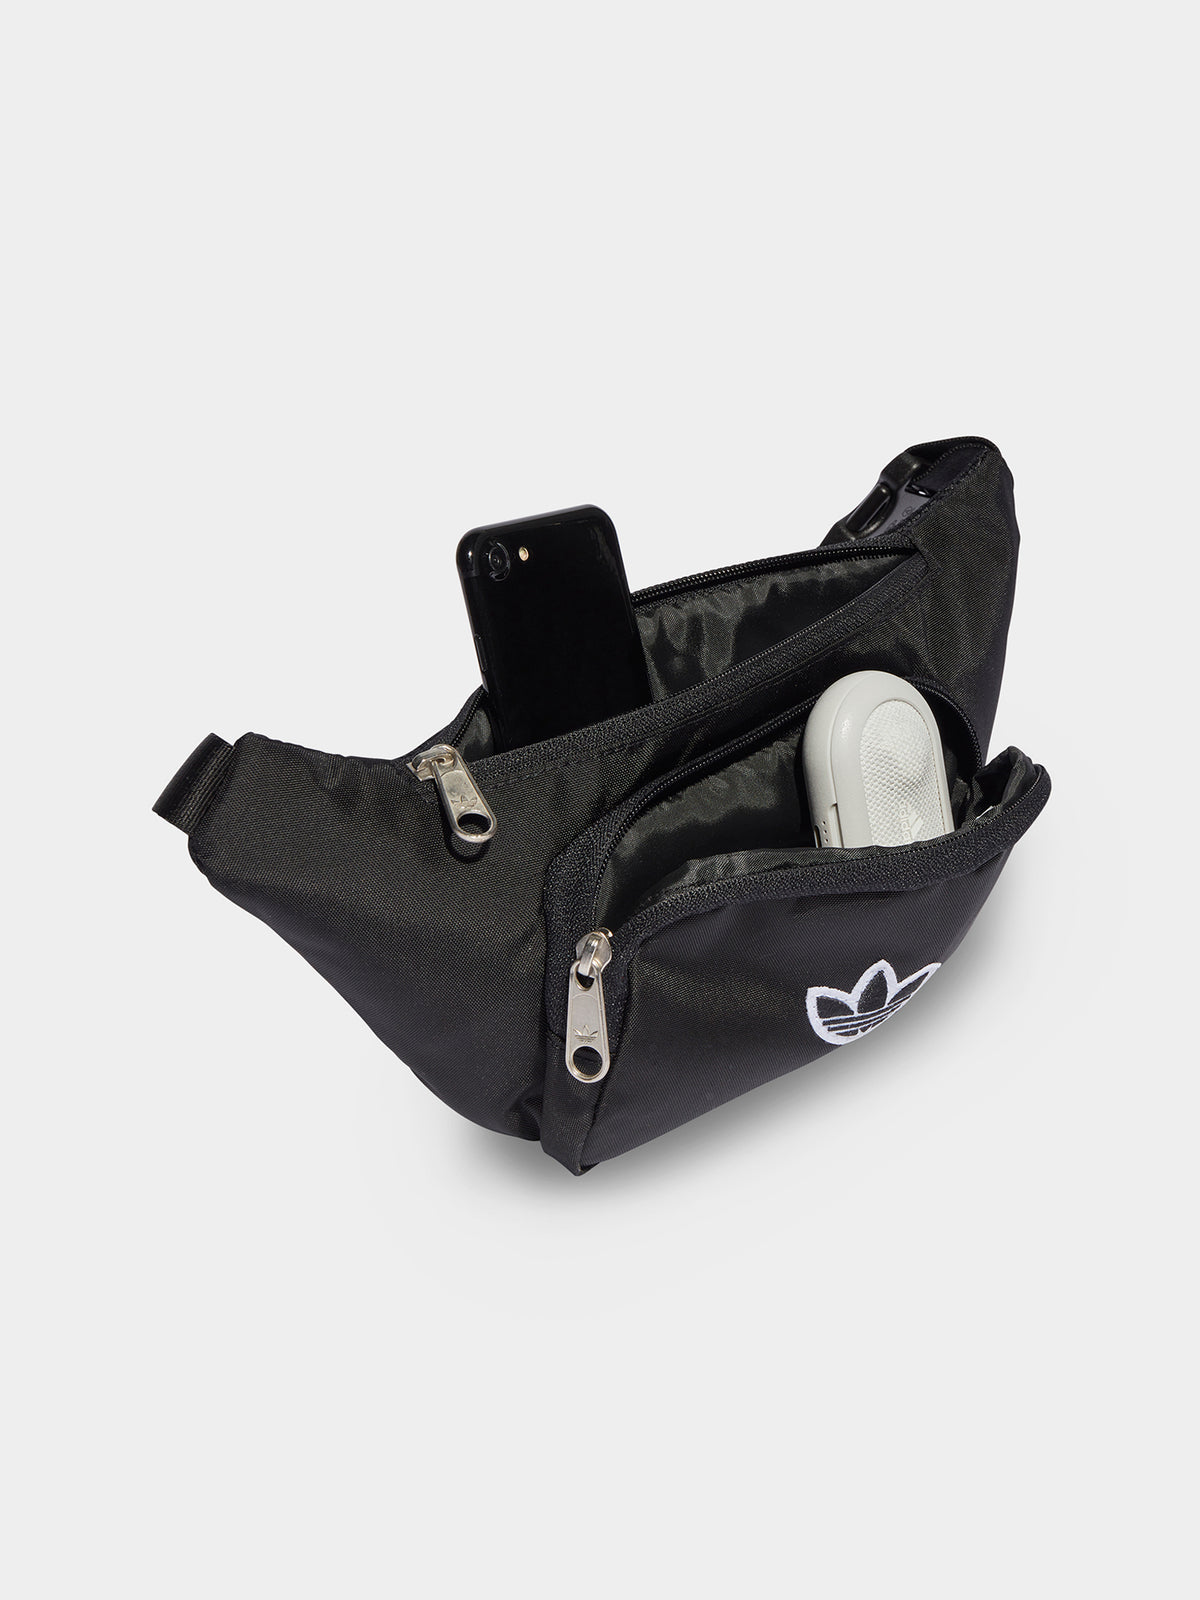 Premium Essentials Waist Bag in Black